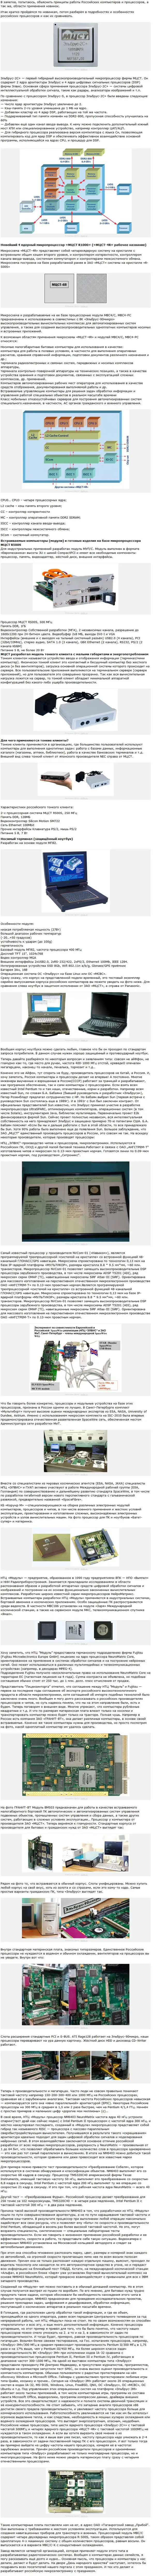 Новые российские компьютеры: характеристики, подробности, разъяснения